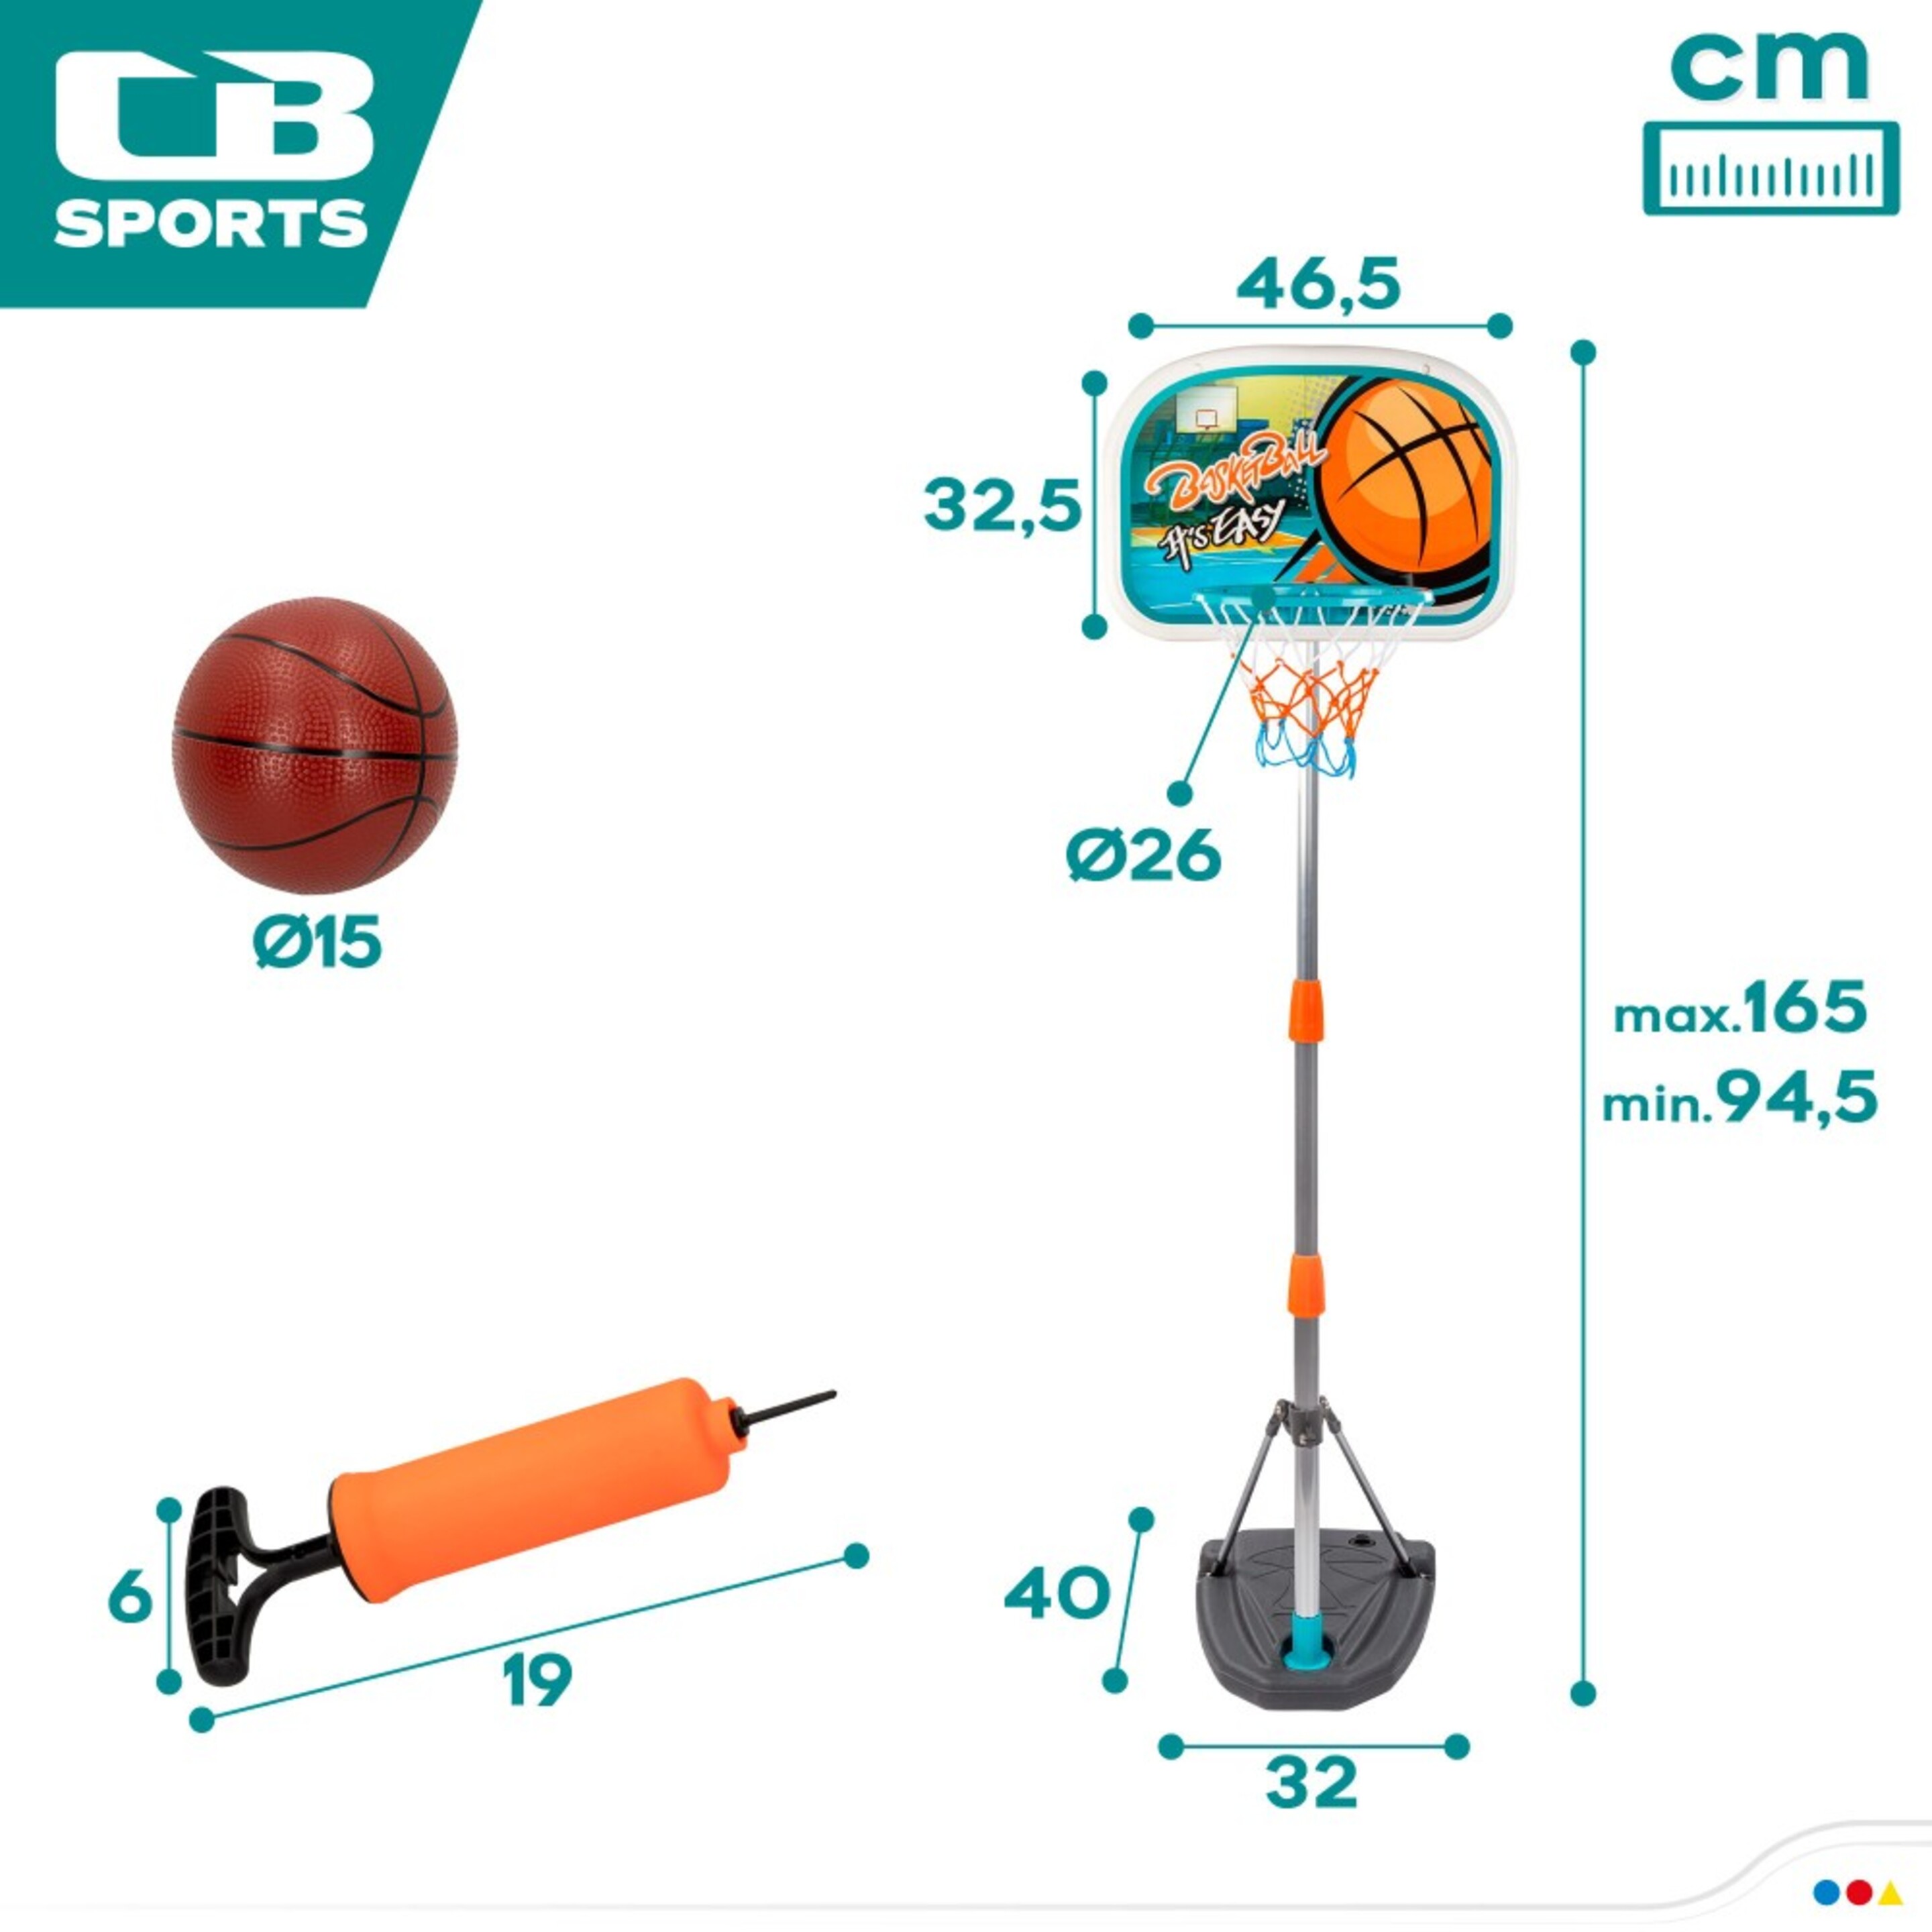 Canasta Y Balón De Baloncesto Cb Sports - Multicolor  MKP